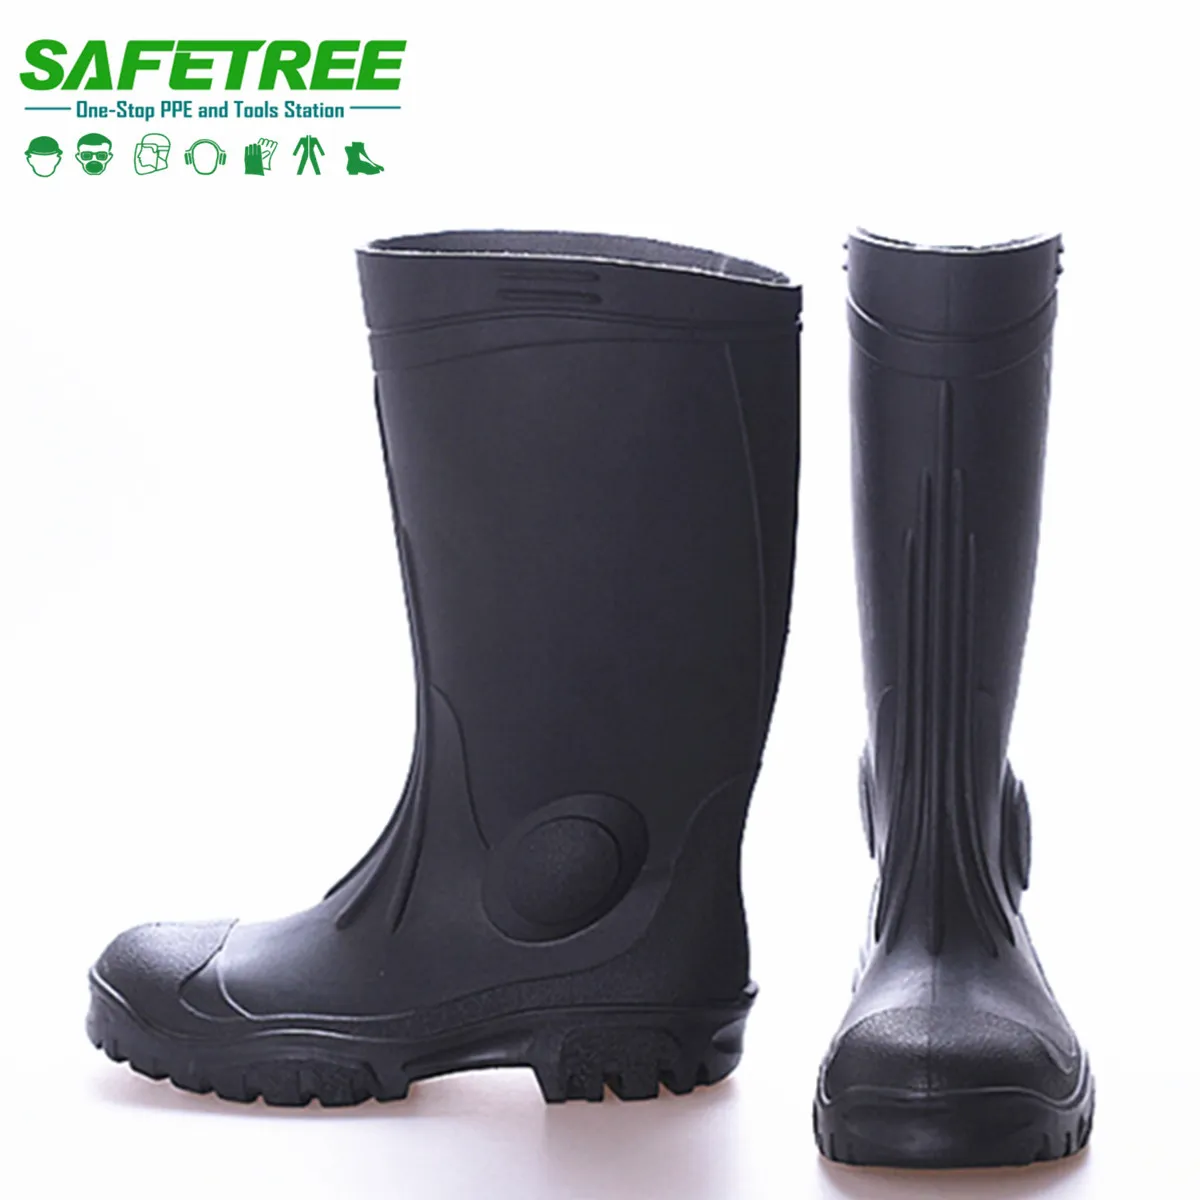 Botas de goma impermeables de PVC con punta de acero, calzado de seguridad resistente al agua